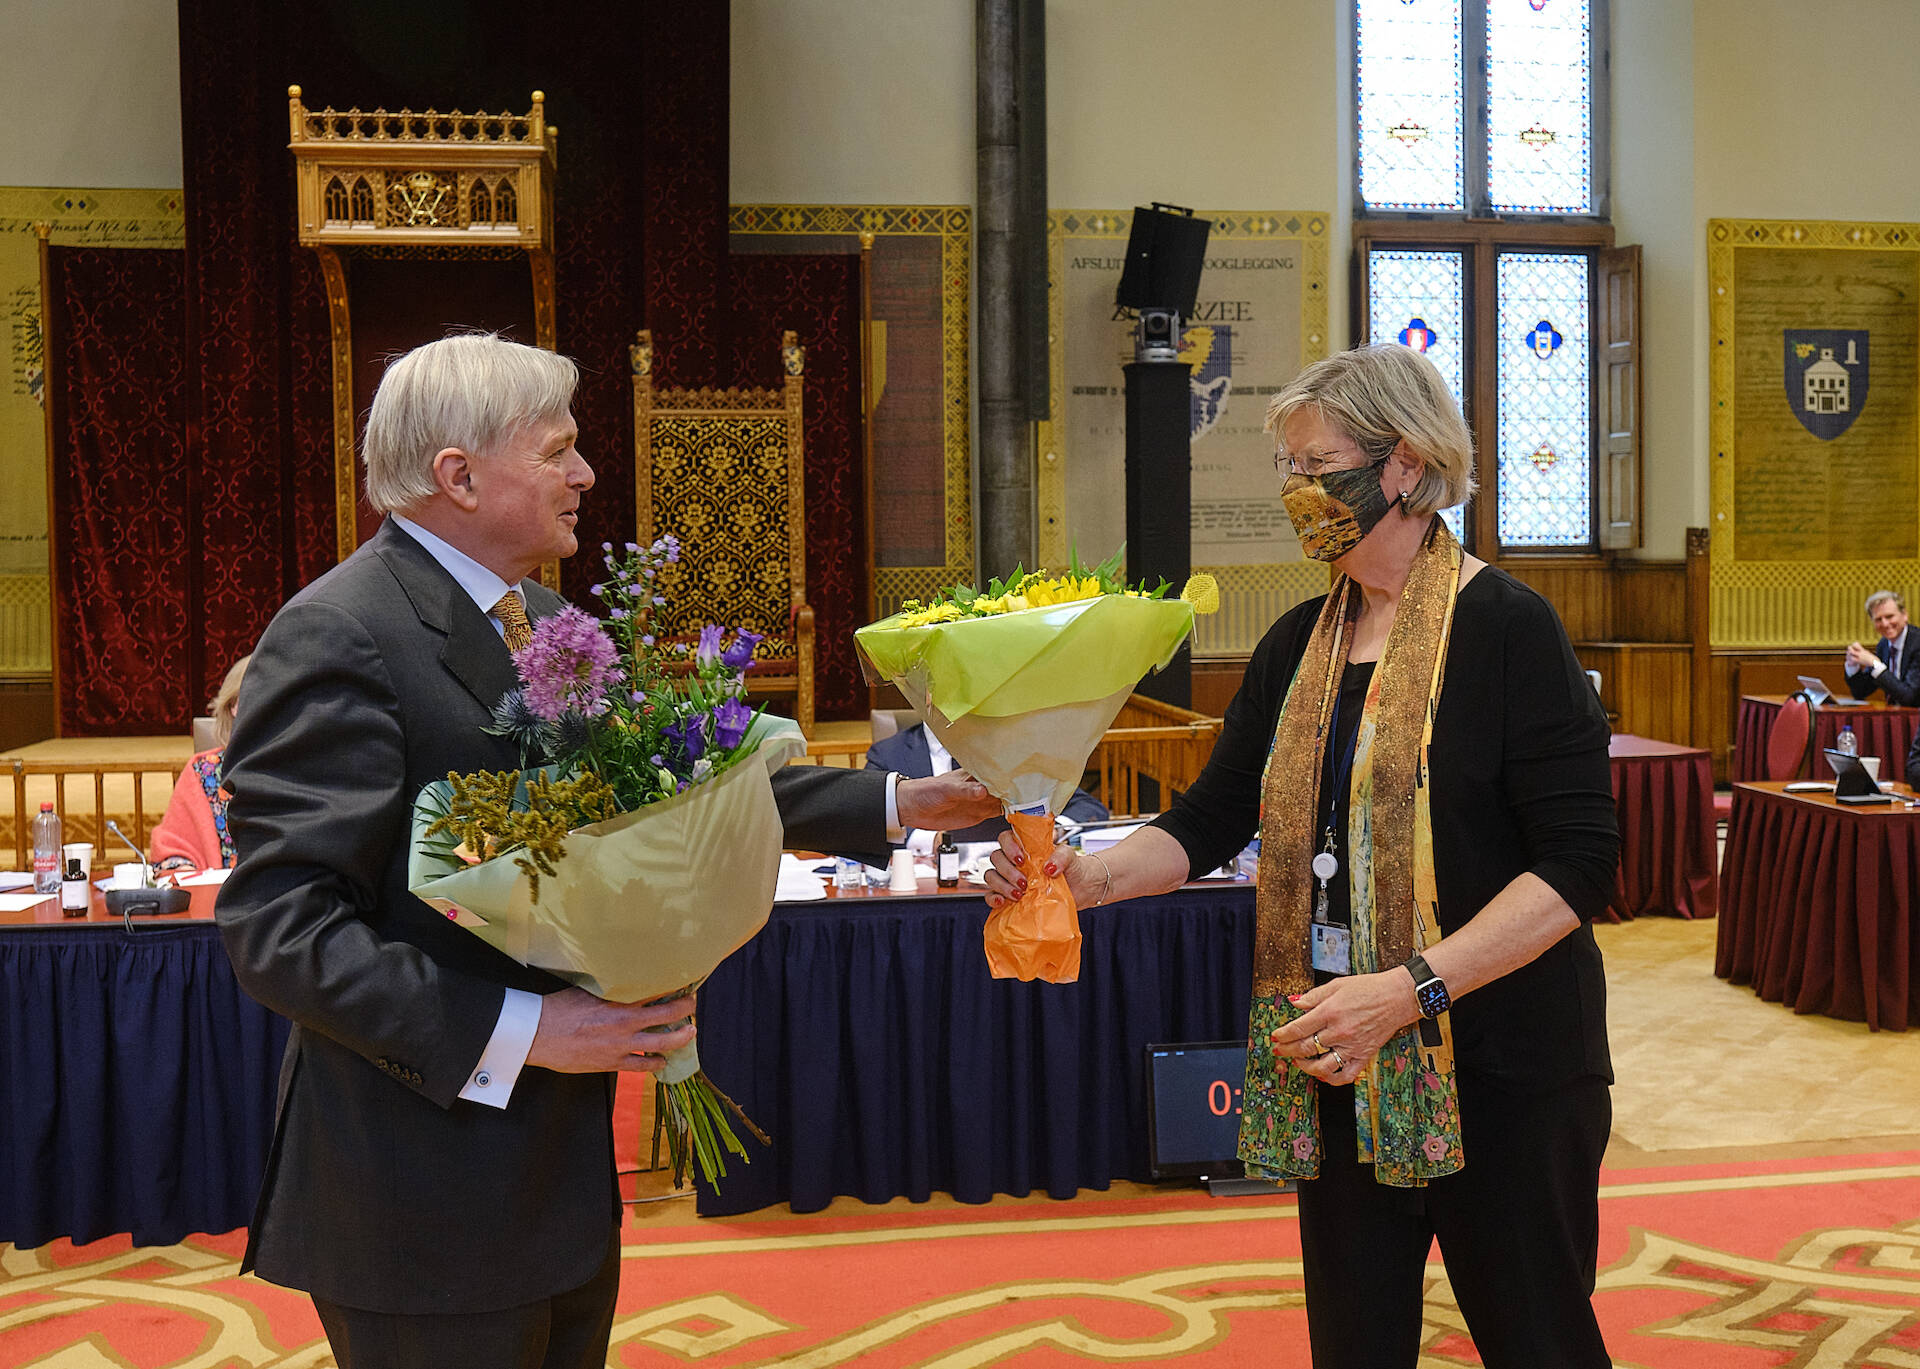 Felicitaties van VVD-fractievoorzitter Annemarie Jorritsma voor senator Keunen die zijn maidenspeech hield